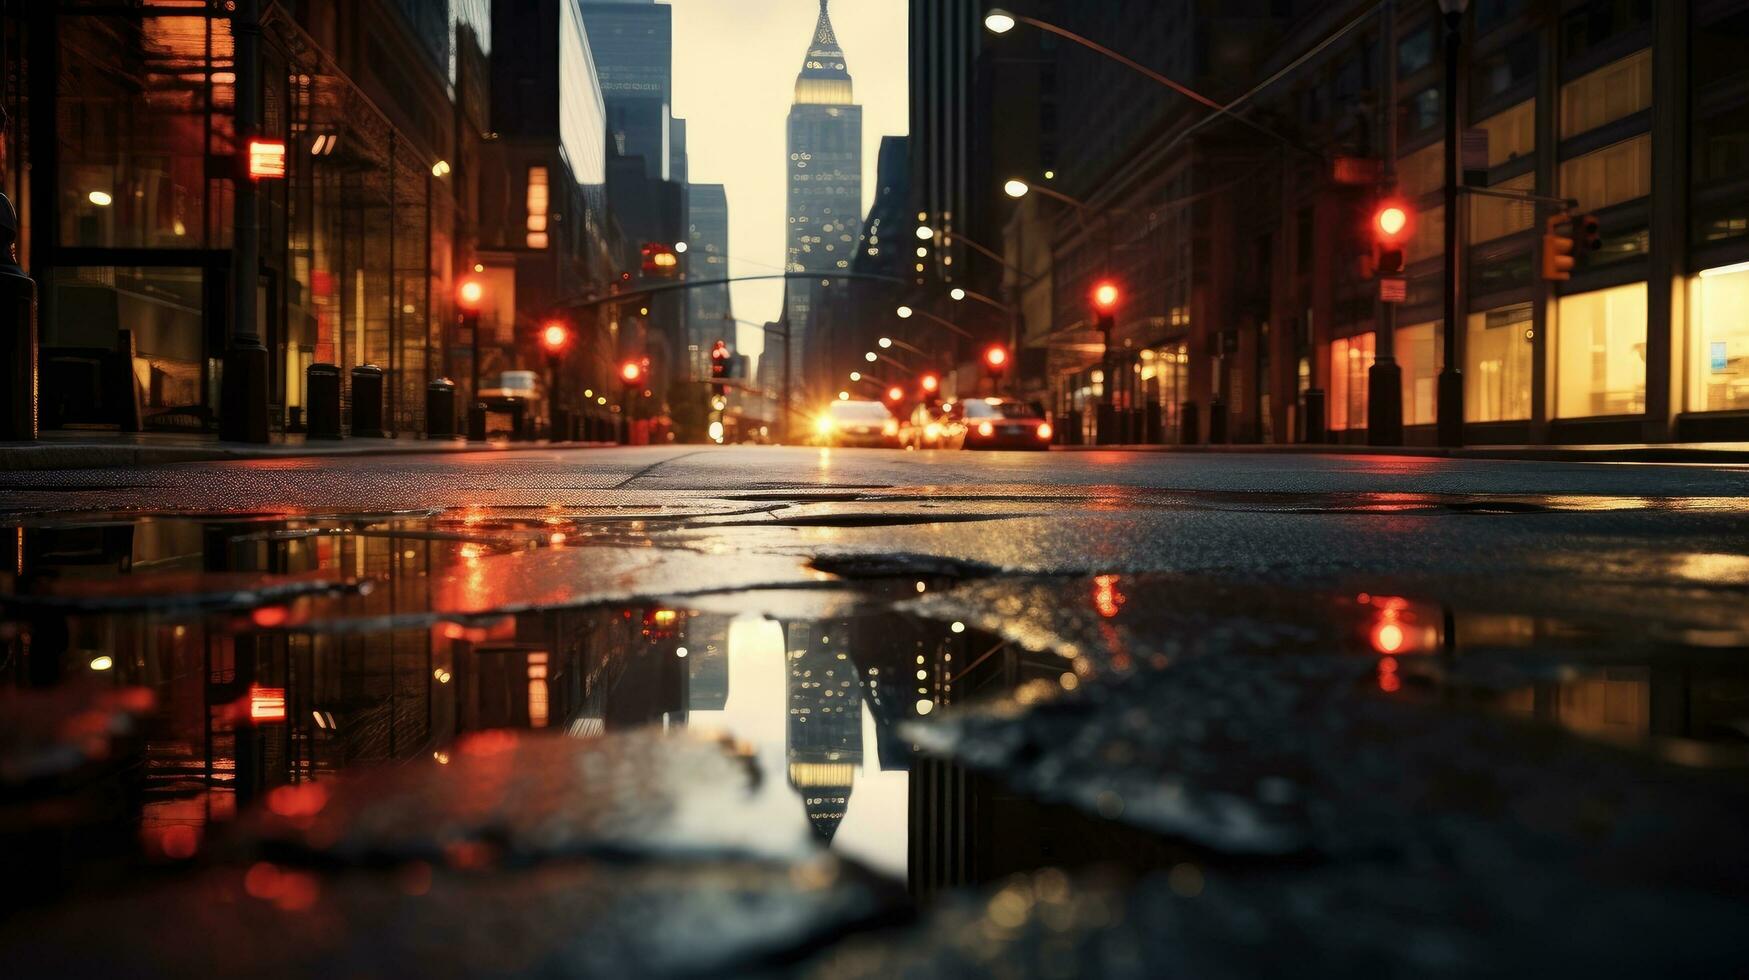 Urbain toile de fond avec illuminé et ombragé éléments nyc routes luisant de pluie avec images réfléchi sur humide chaussée photo